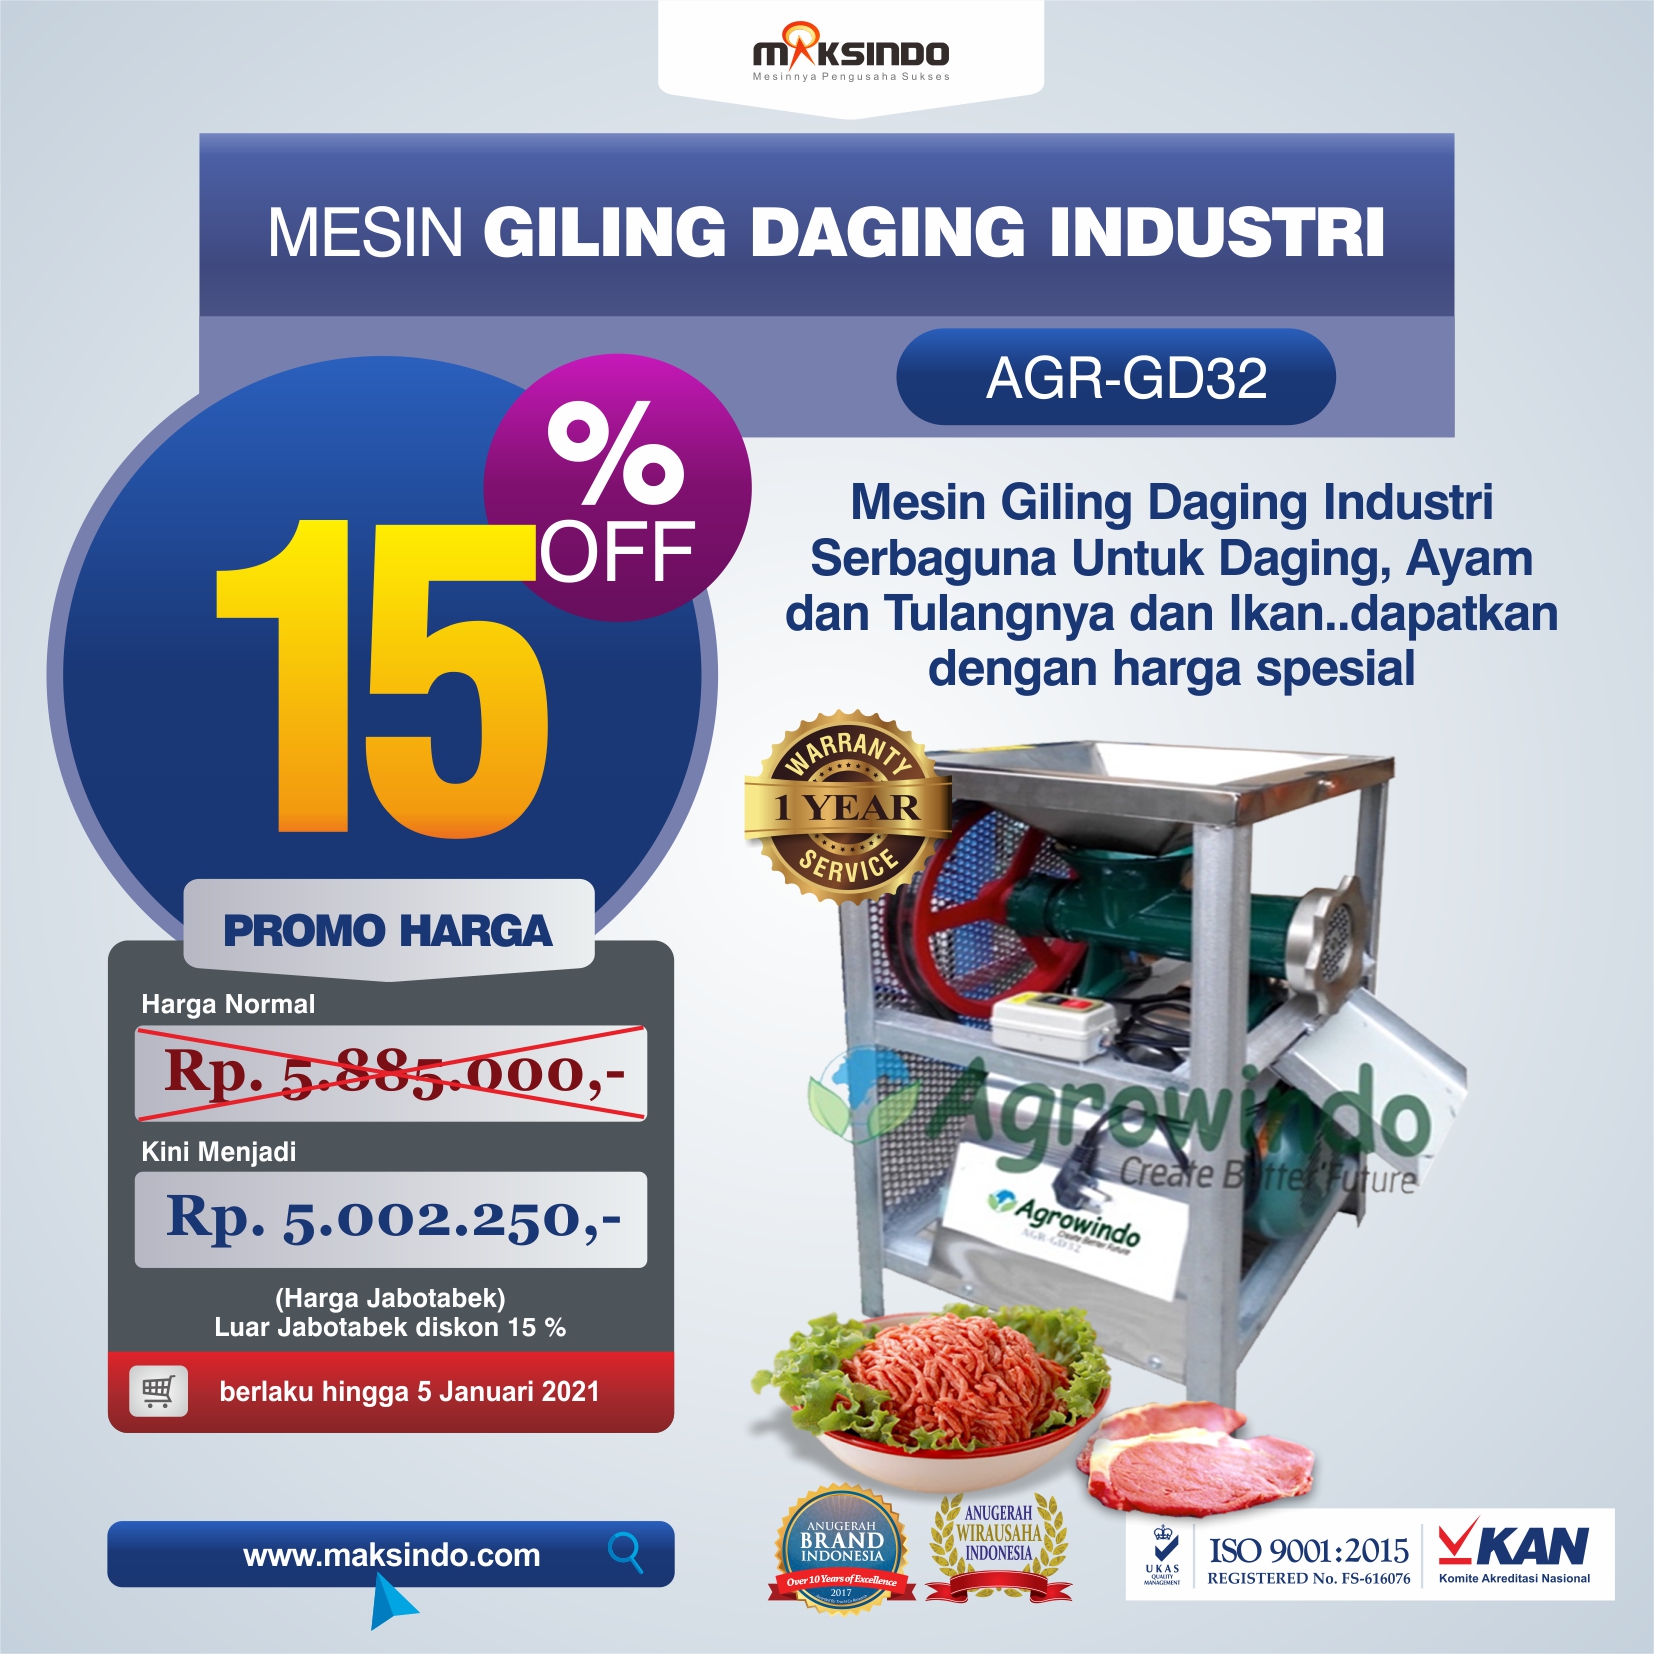 Jual Mesin Giling Daging Industri (AGR-GD32) di Malang